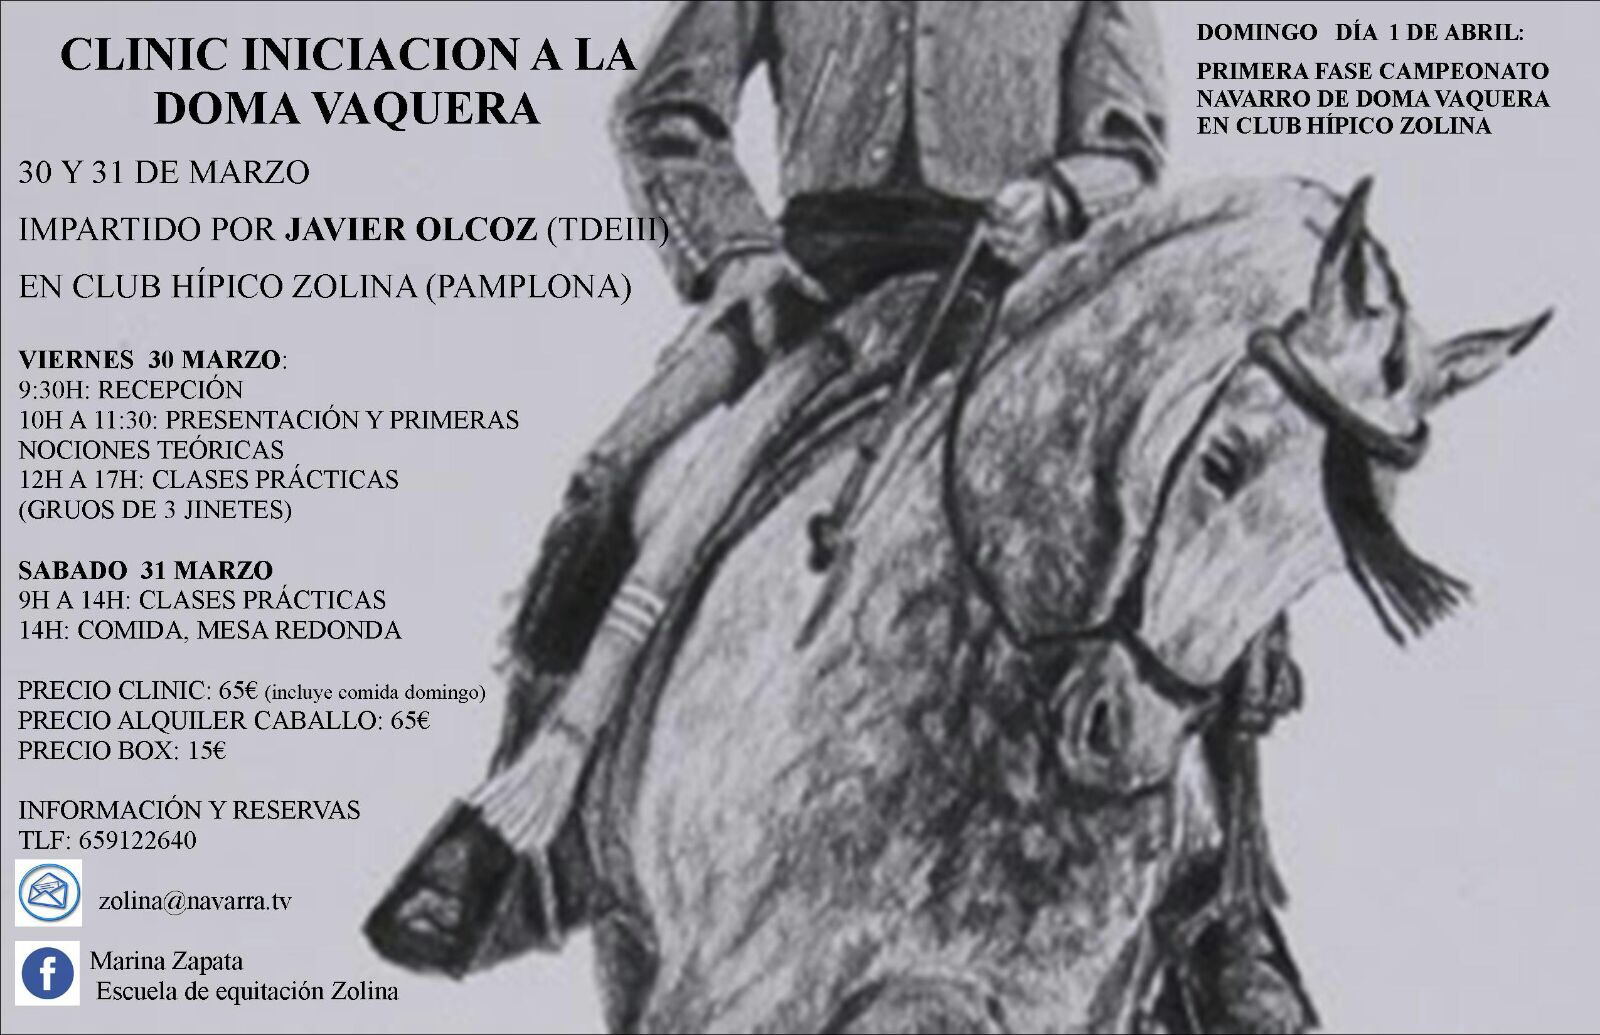 Clínic iniciación a la Doma Vaquera los días 30 y 31 de marzo en el Club Hípico Zolina